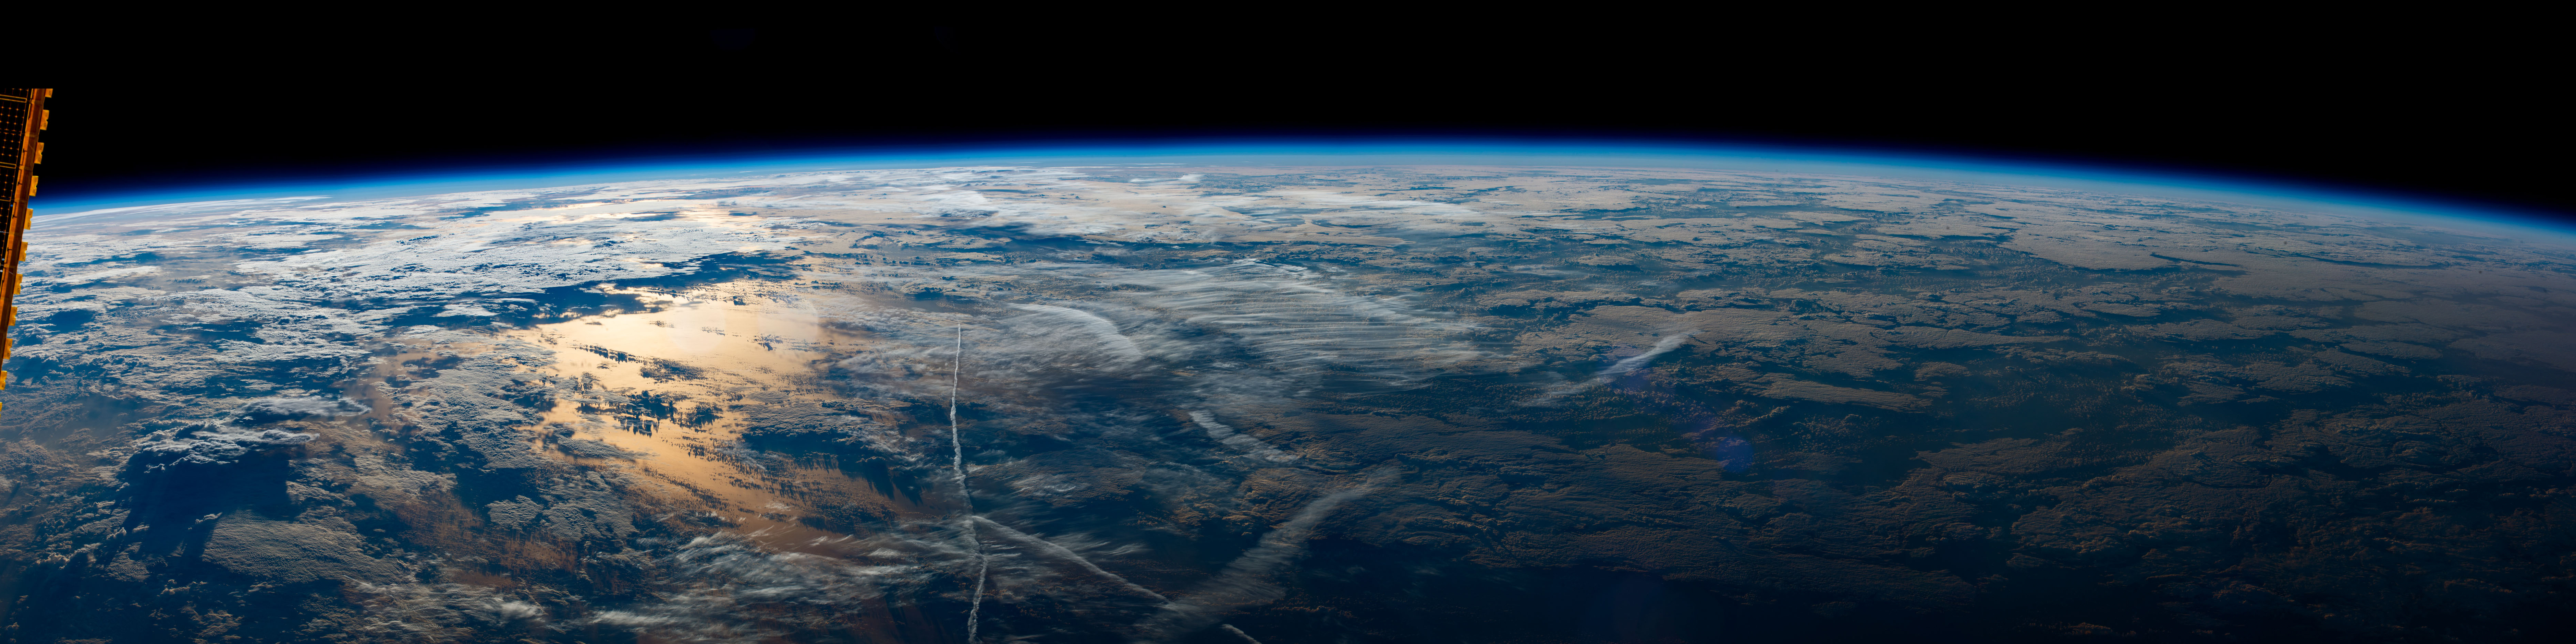 778207 descargar imagen nasa, estación espacial internacional, tierra/naturaleza, desde el espacio, planeta: fondos de pantalla y protectores de pantalla gratis